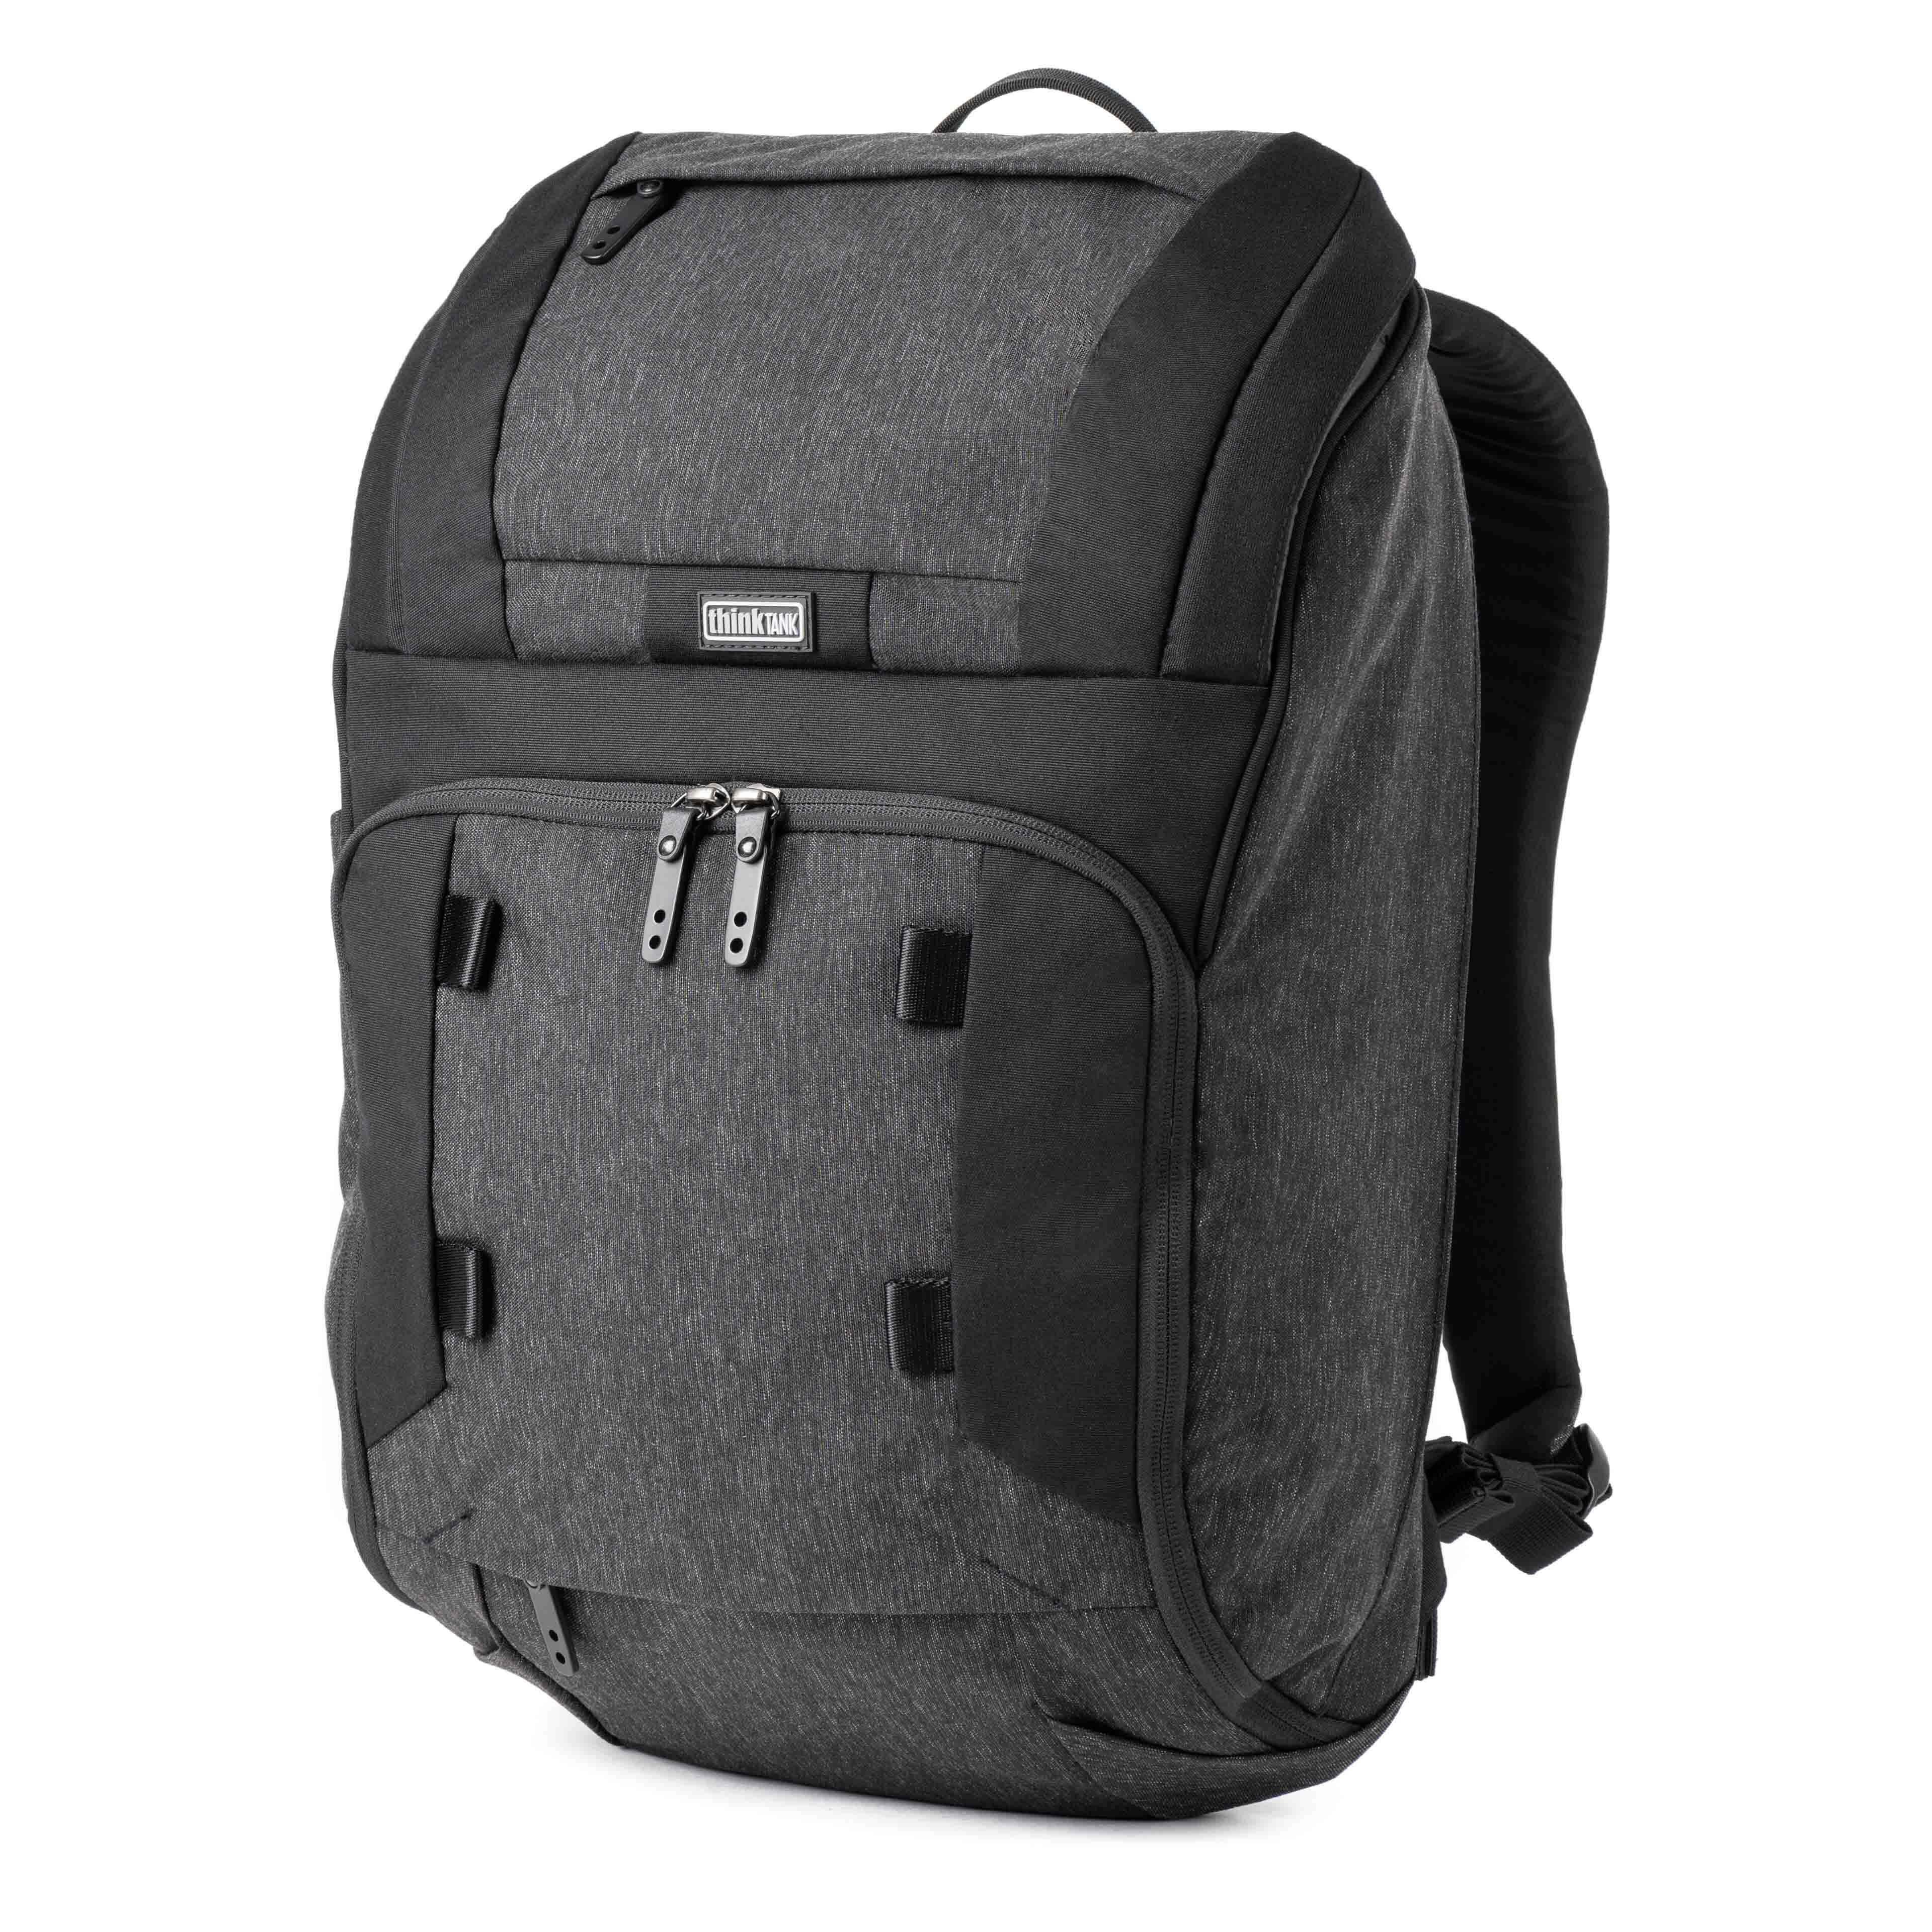 SpeedTop Backpack